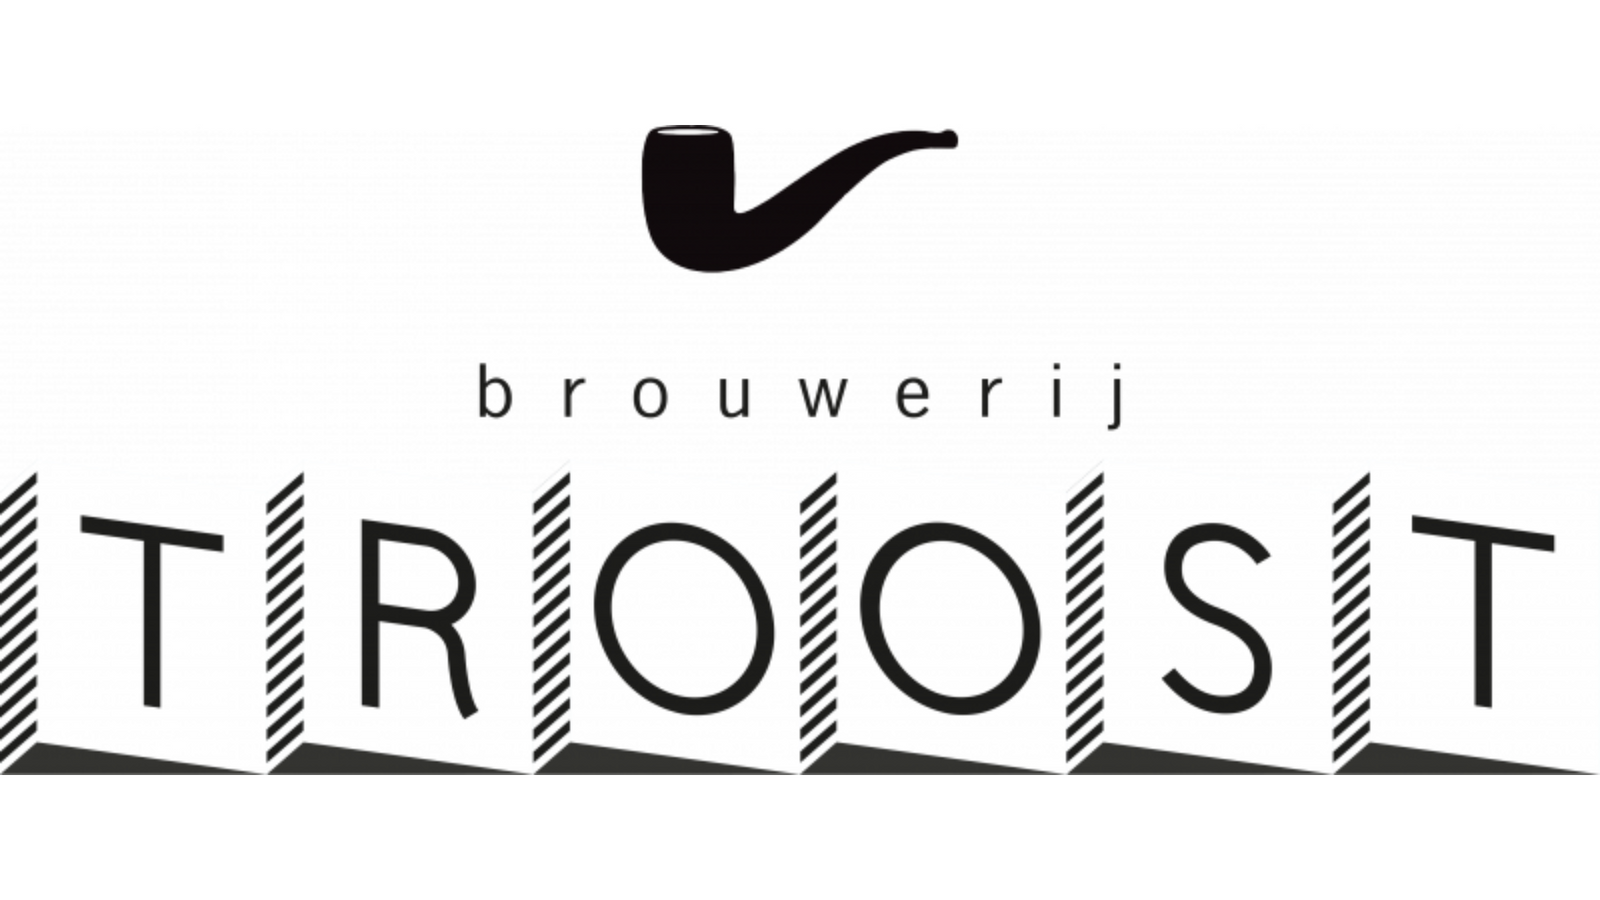 Troost brouwerij logo